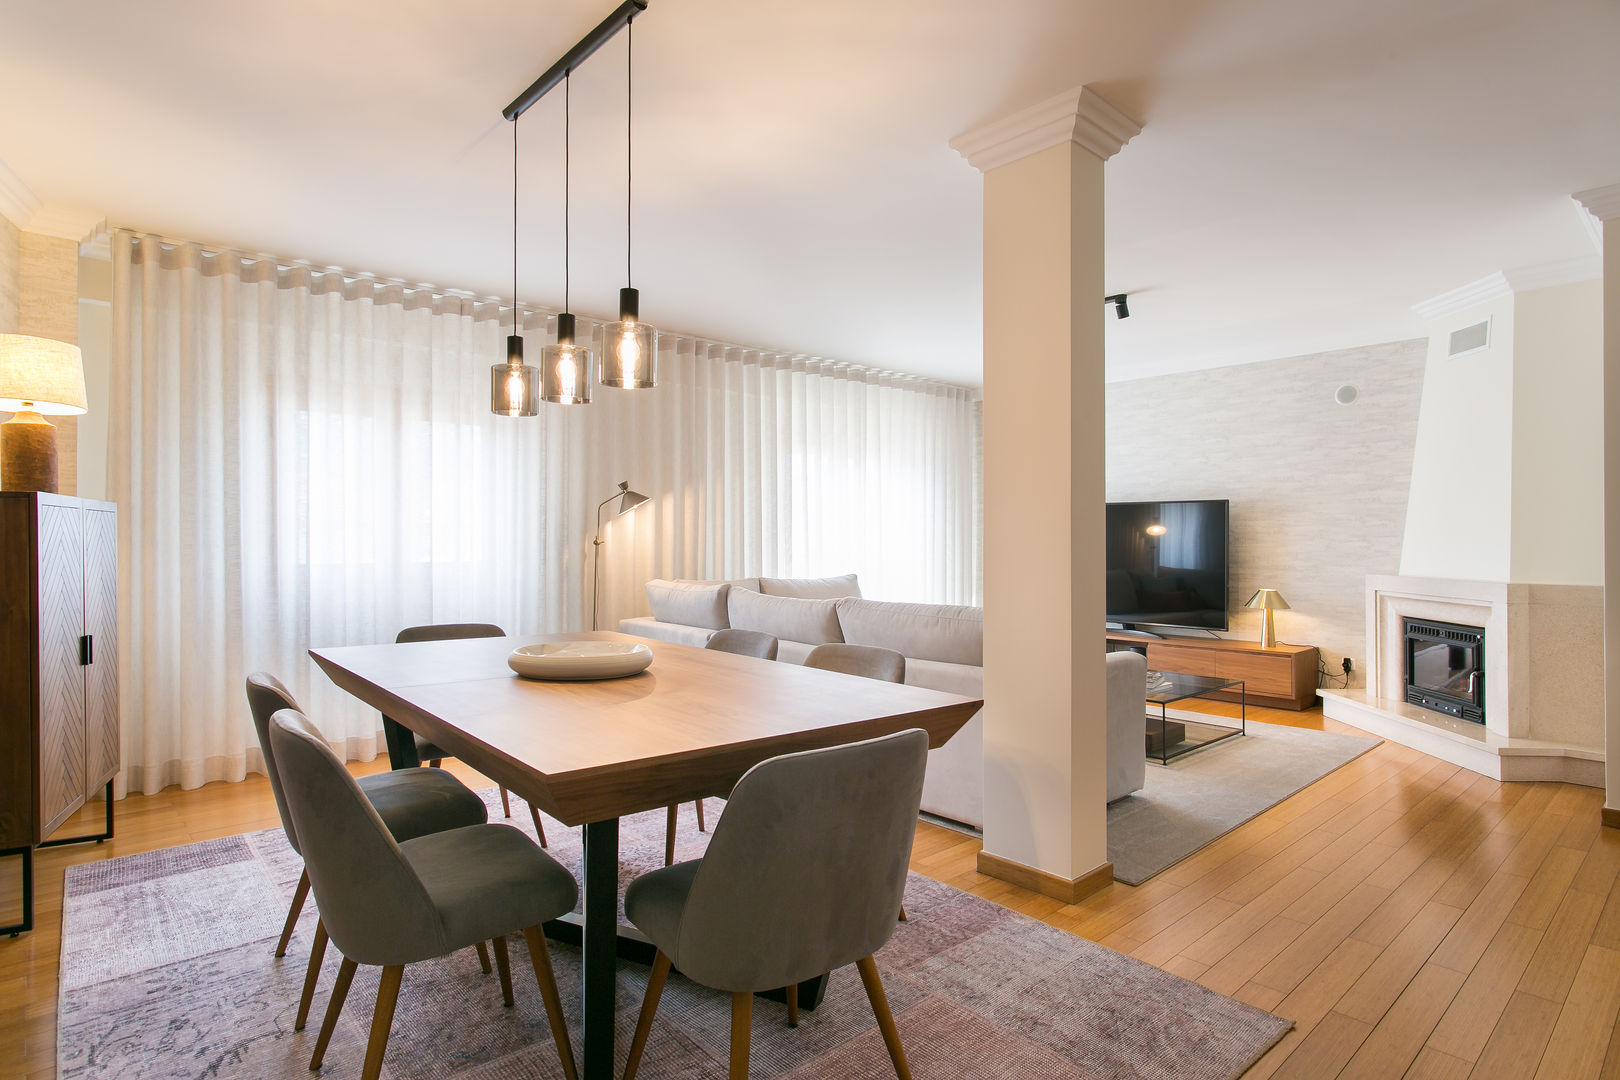 Sala & Suite | Loures, Traço Magenta - Design de Interiores Traço Magenta - Design de Interiores Modern living room